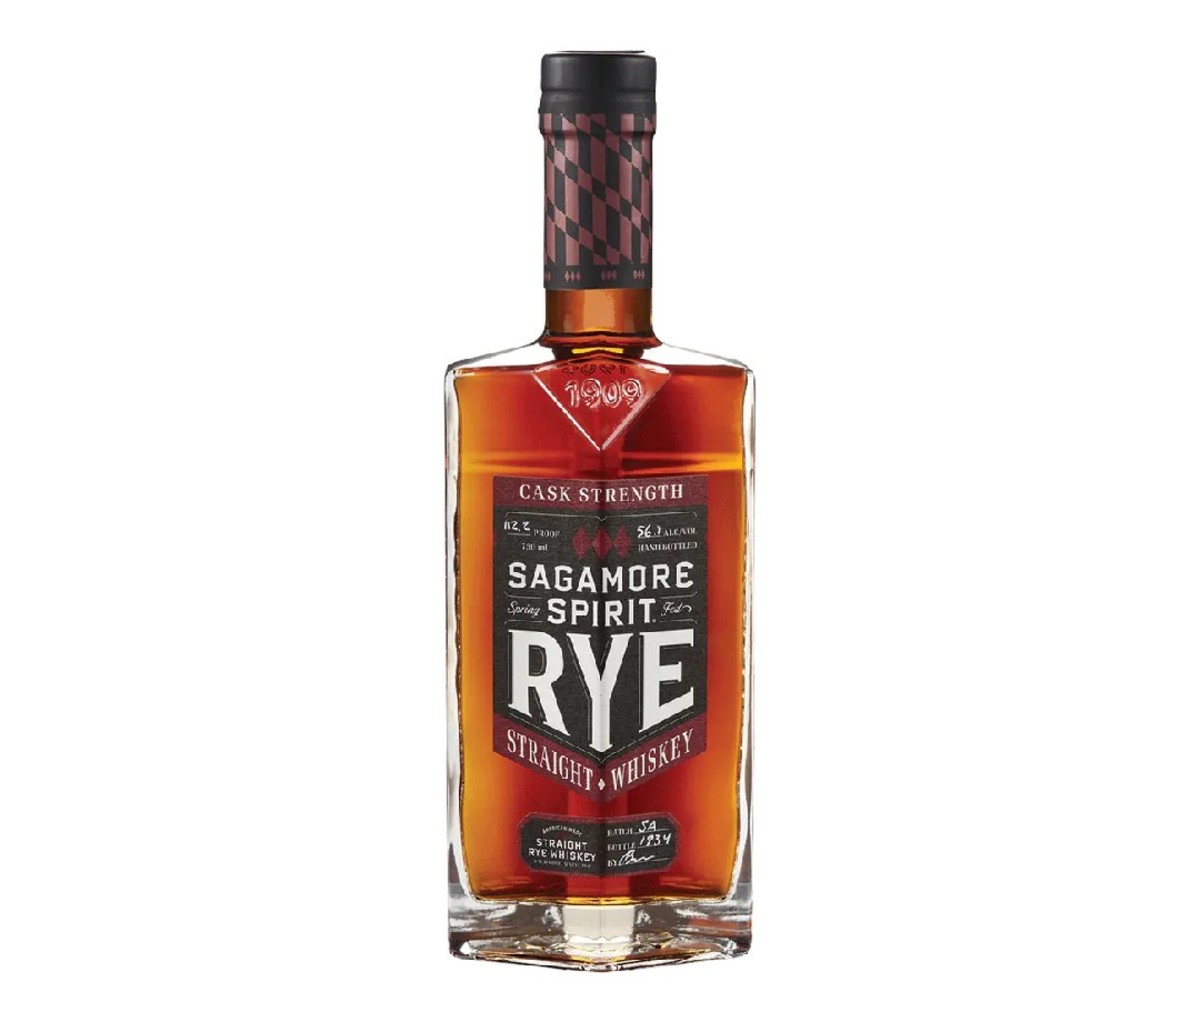 A bottle of Sagamore Spirit Cask Strength Rye Whiskey.